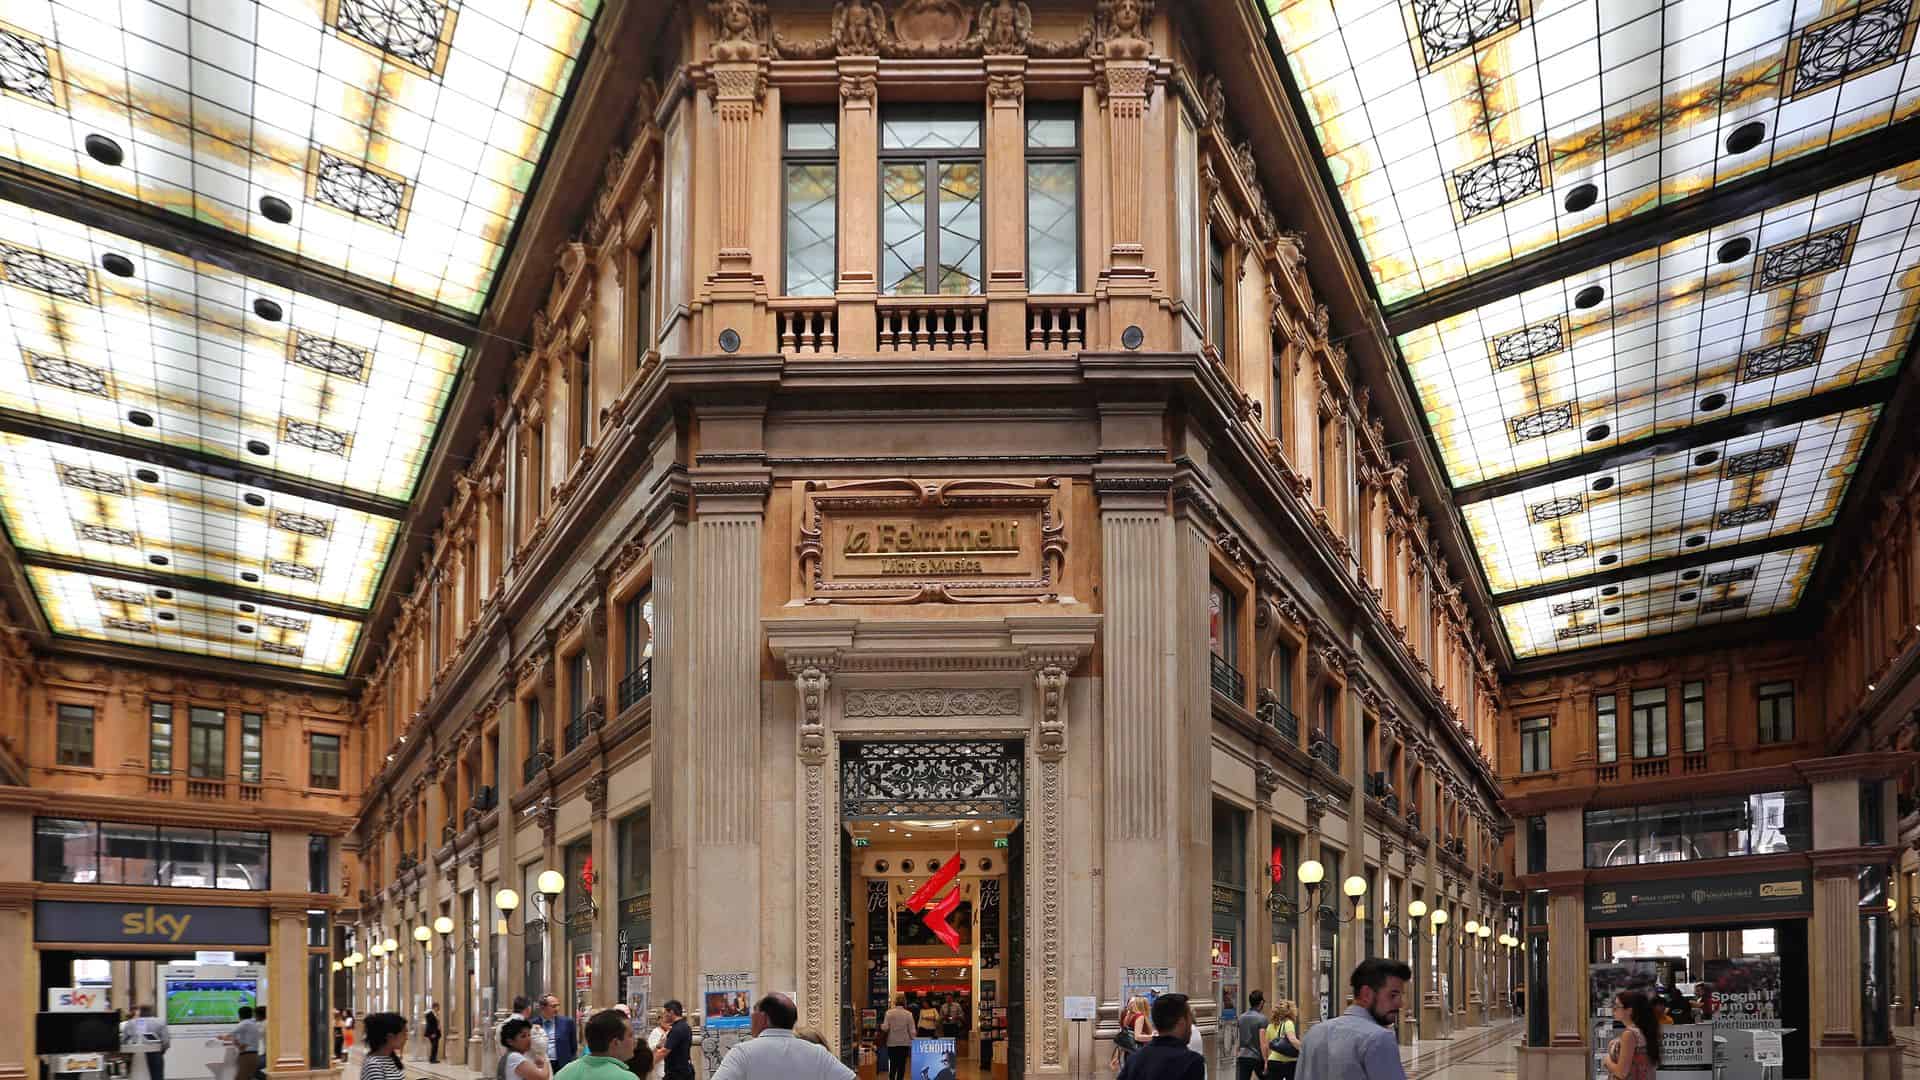 The Art Nouveau shopping arcade known as Galleria Alberto Sordi.